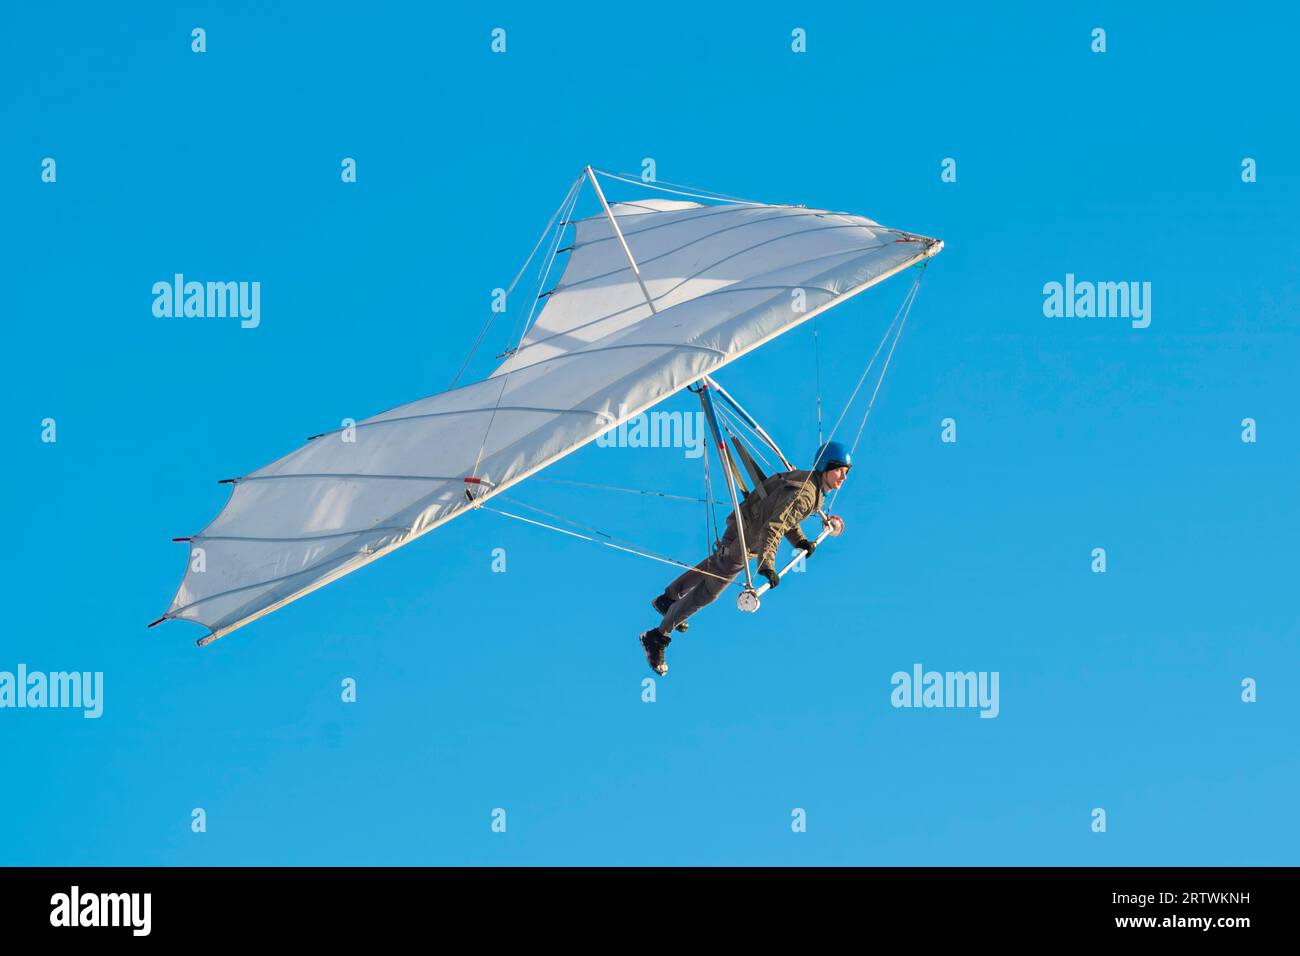 Fliegen lernen. Anfänger Pilot läuft schnell mit Hang Glider Flügel  Stockfotografie - Alamy